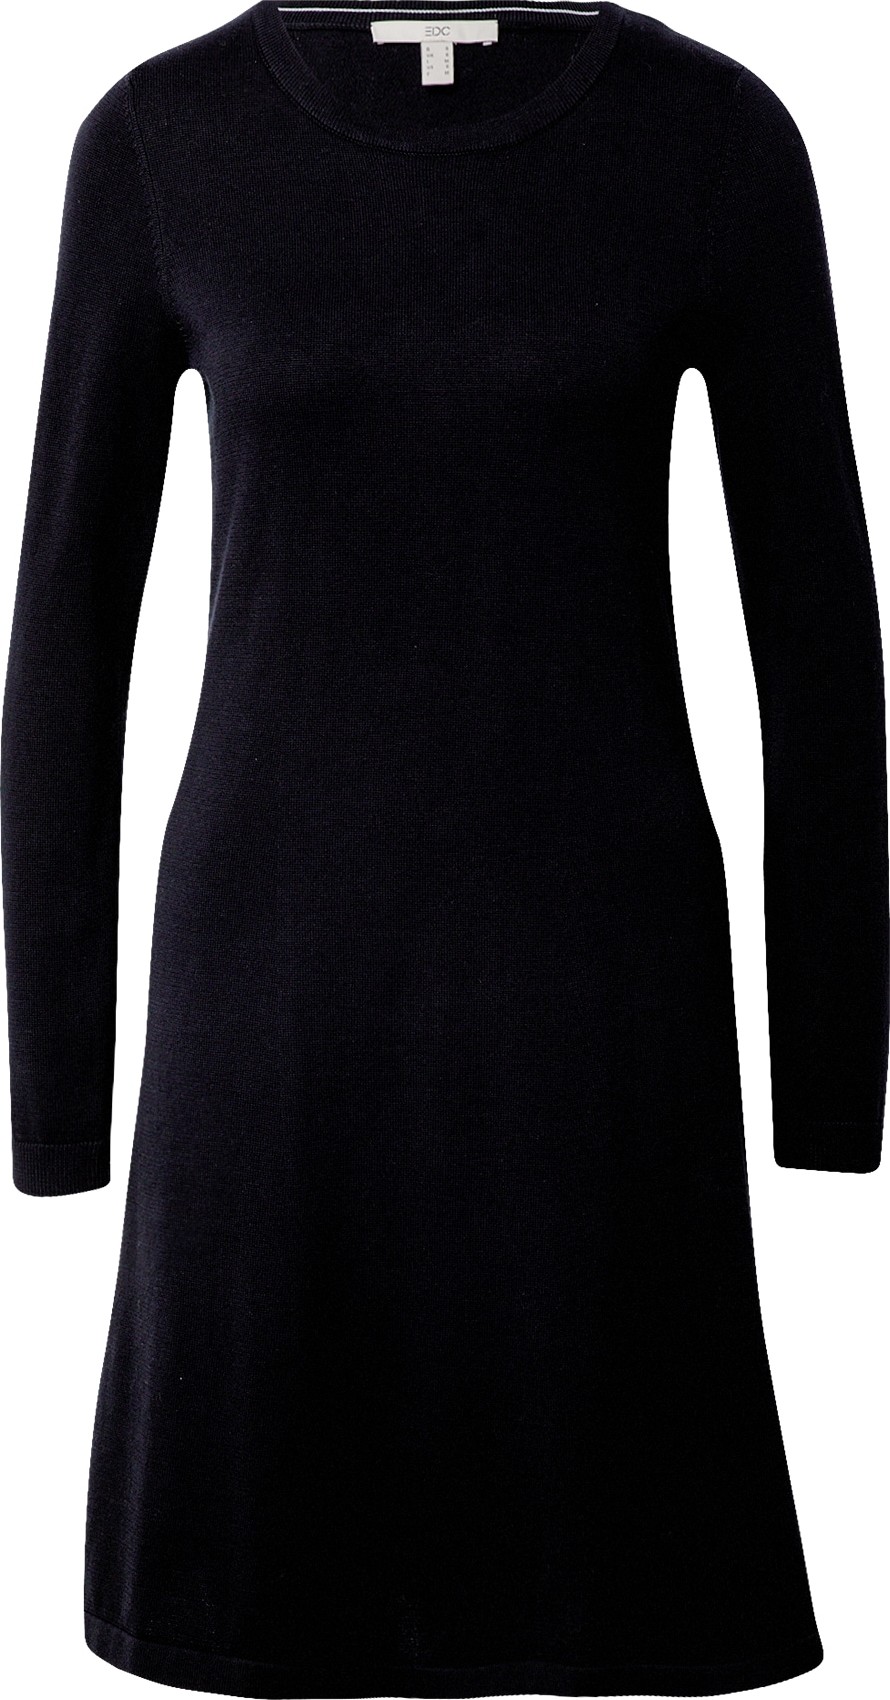 EDC BY ESPRIT Úpletové šaty černá